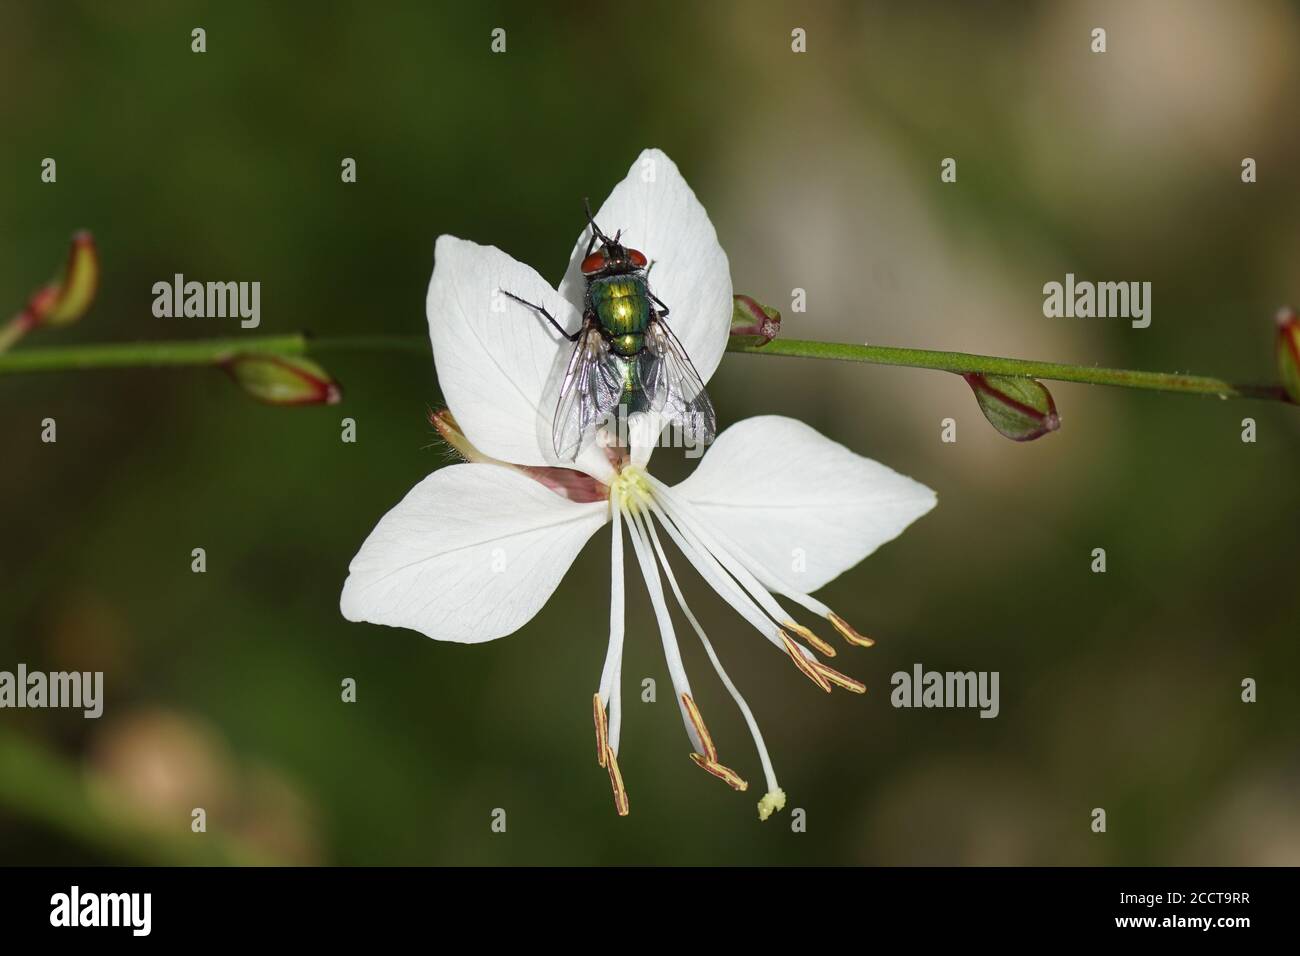 Mosca verde (Lucilia), mosche famiglia, Calliforidae su un fiore di gaura bianca (Gaura lindheimeri), famiglia Onagraceae. Luglio, un giardino olandese. Foto Stock